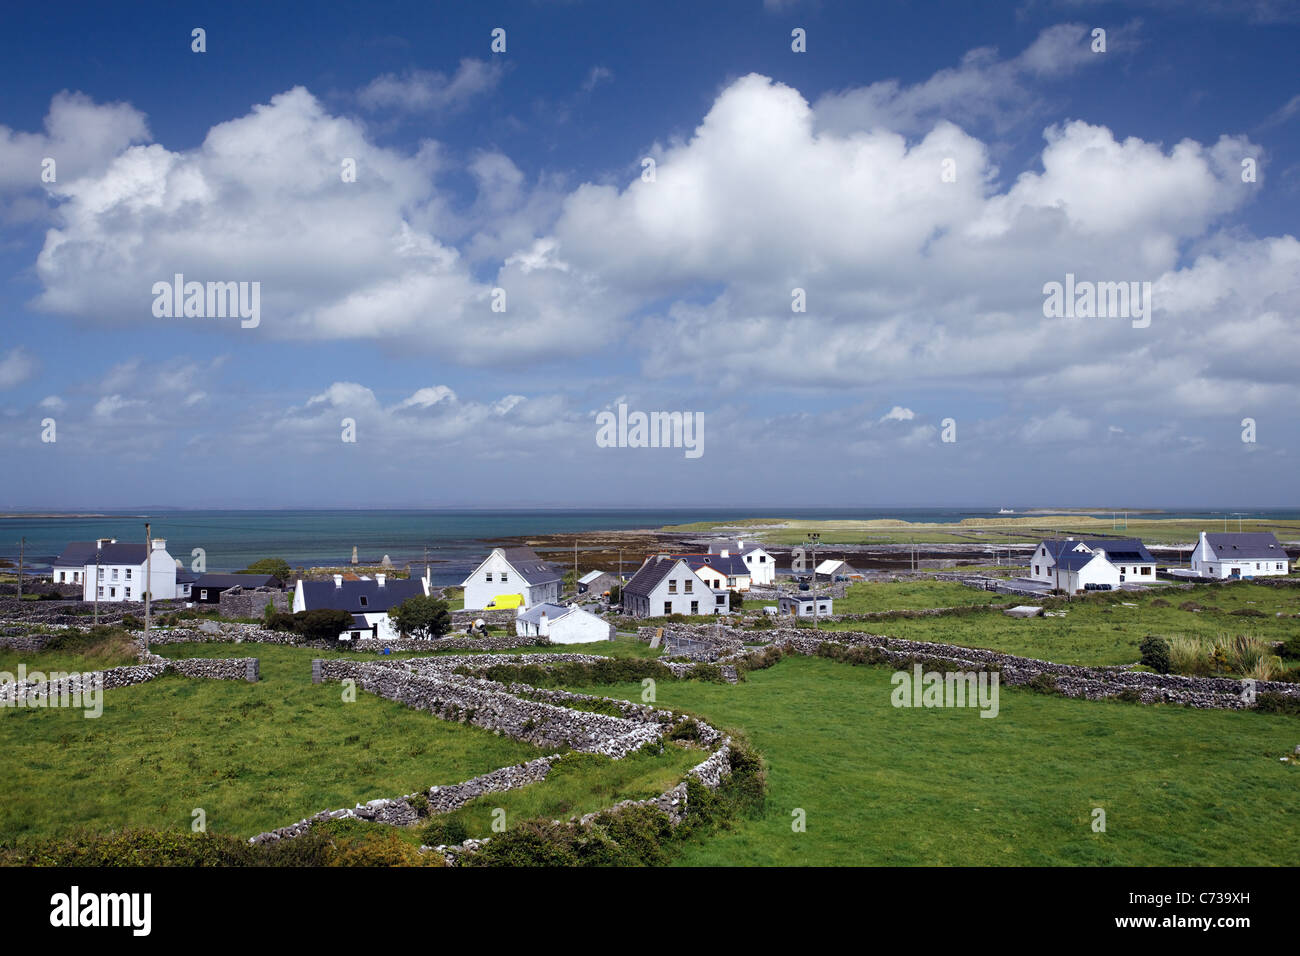 Le village de Place Killeany sur l'île de Inishmore, Aran Islands, comté de Galway, en République d'Irlande Banque D'Images